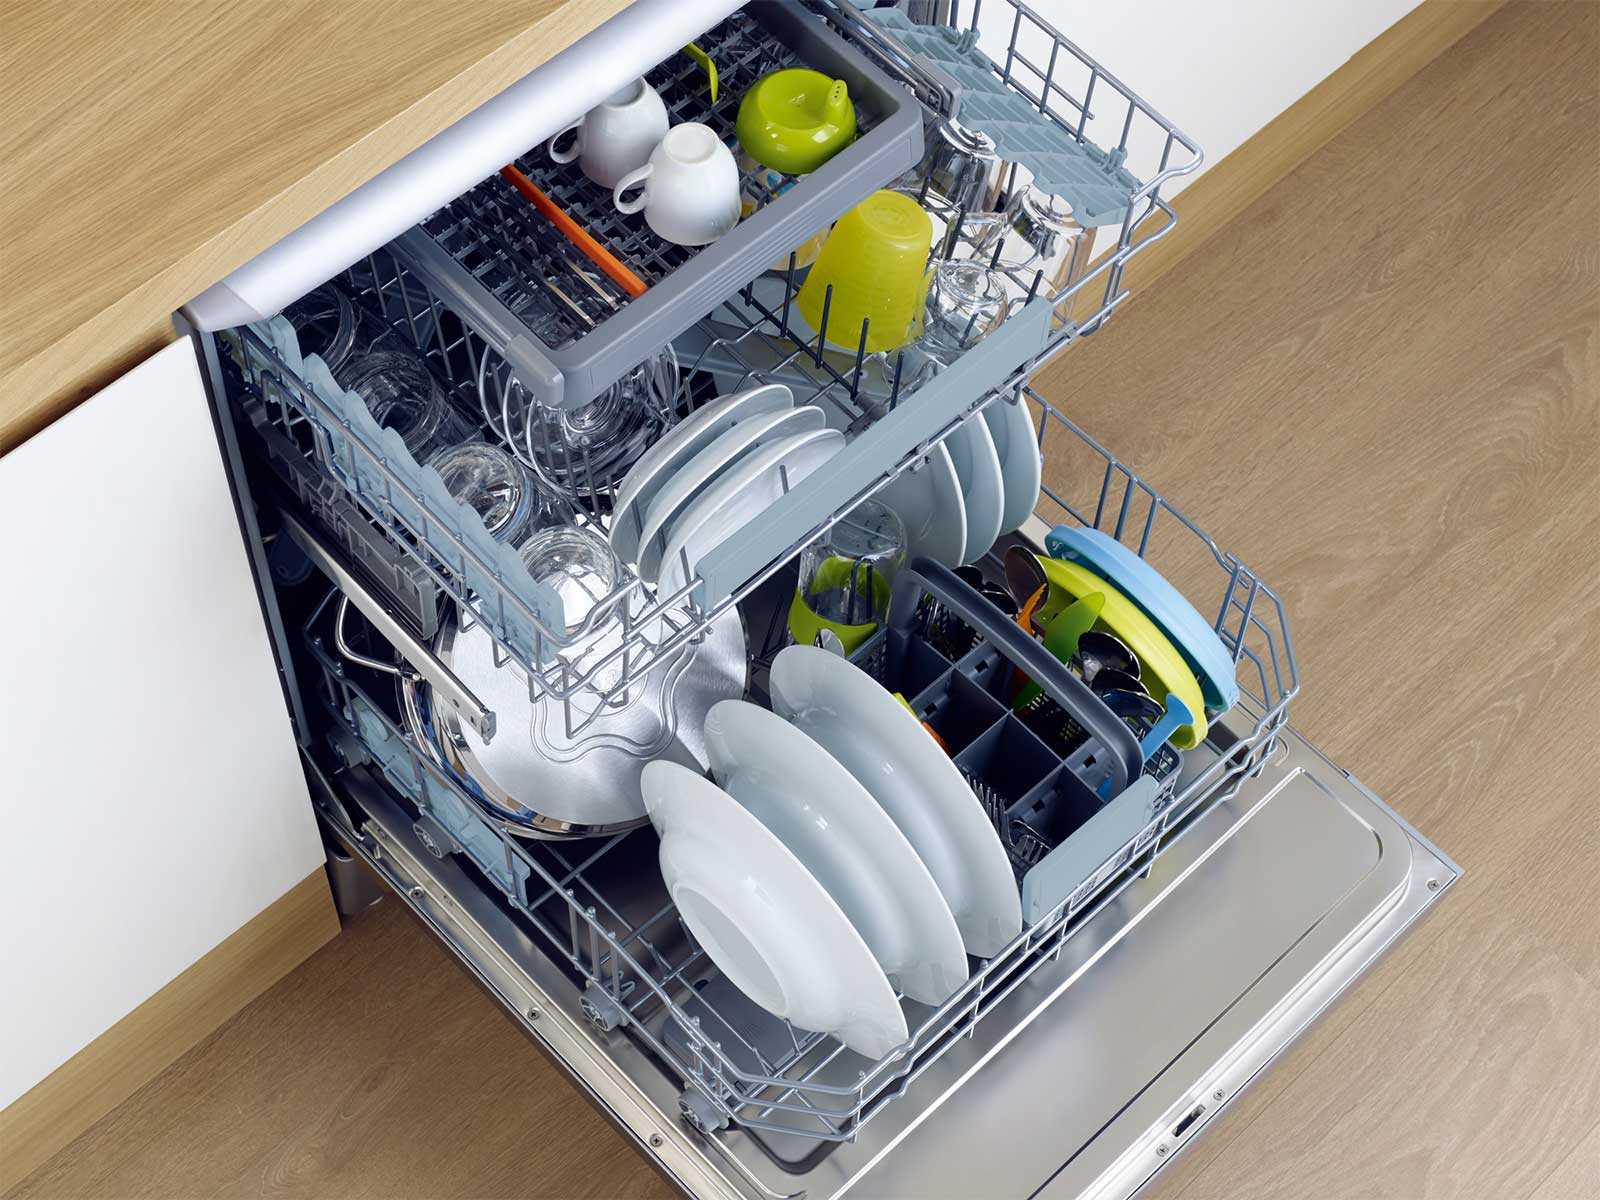 Как сложить посуду в посудомоечную машину фото